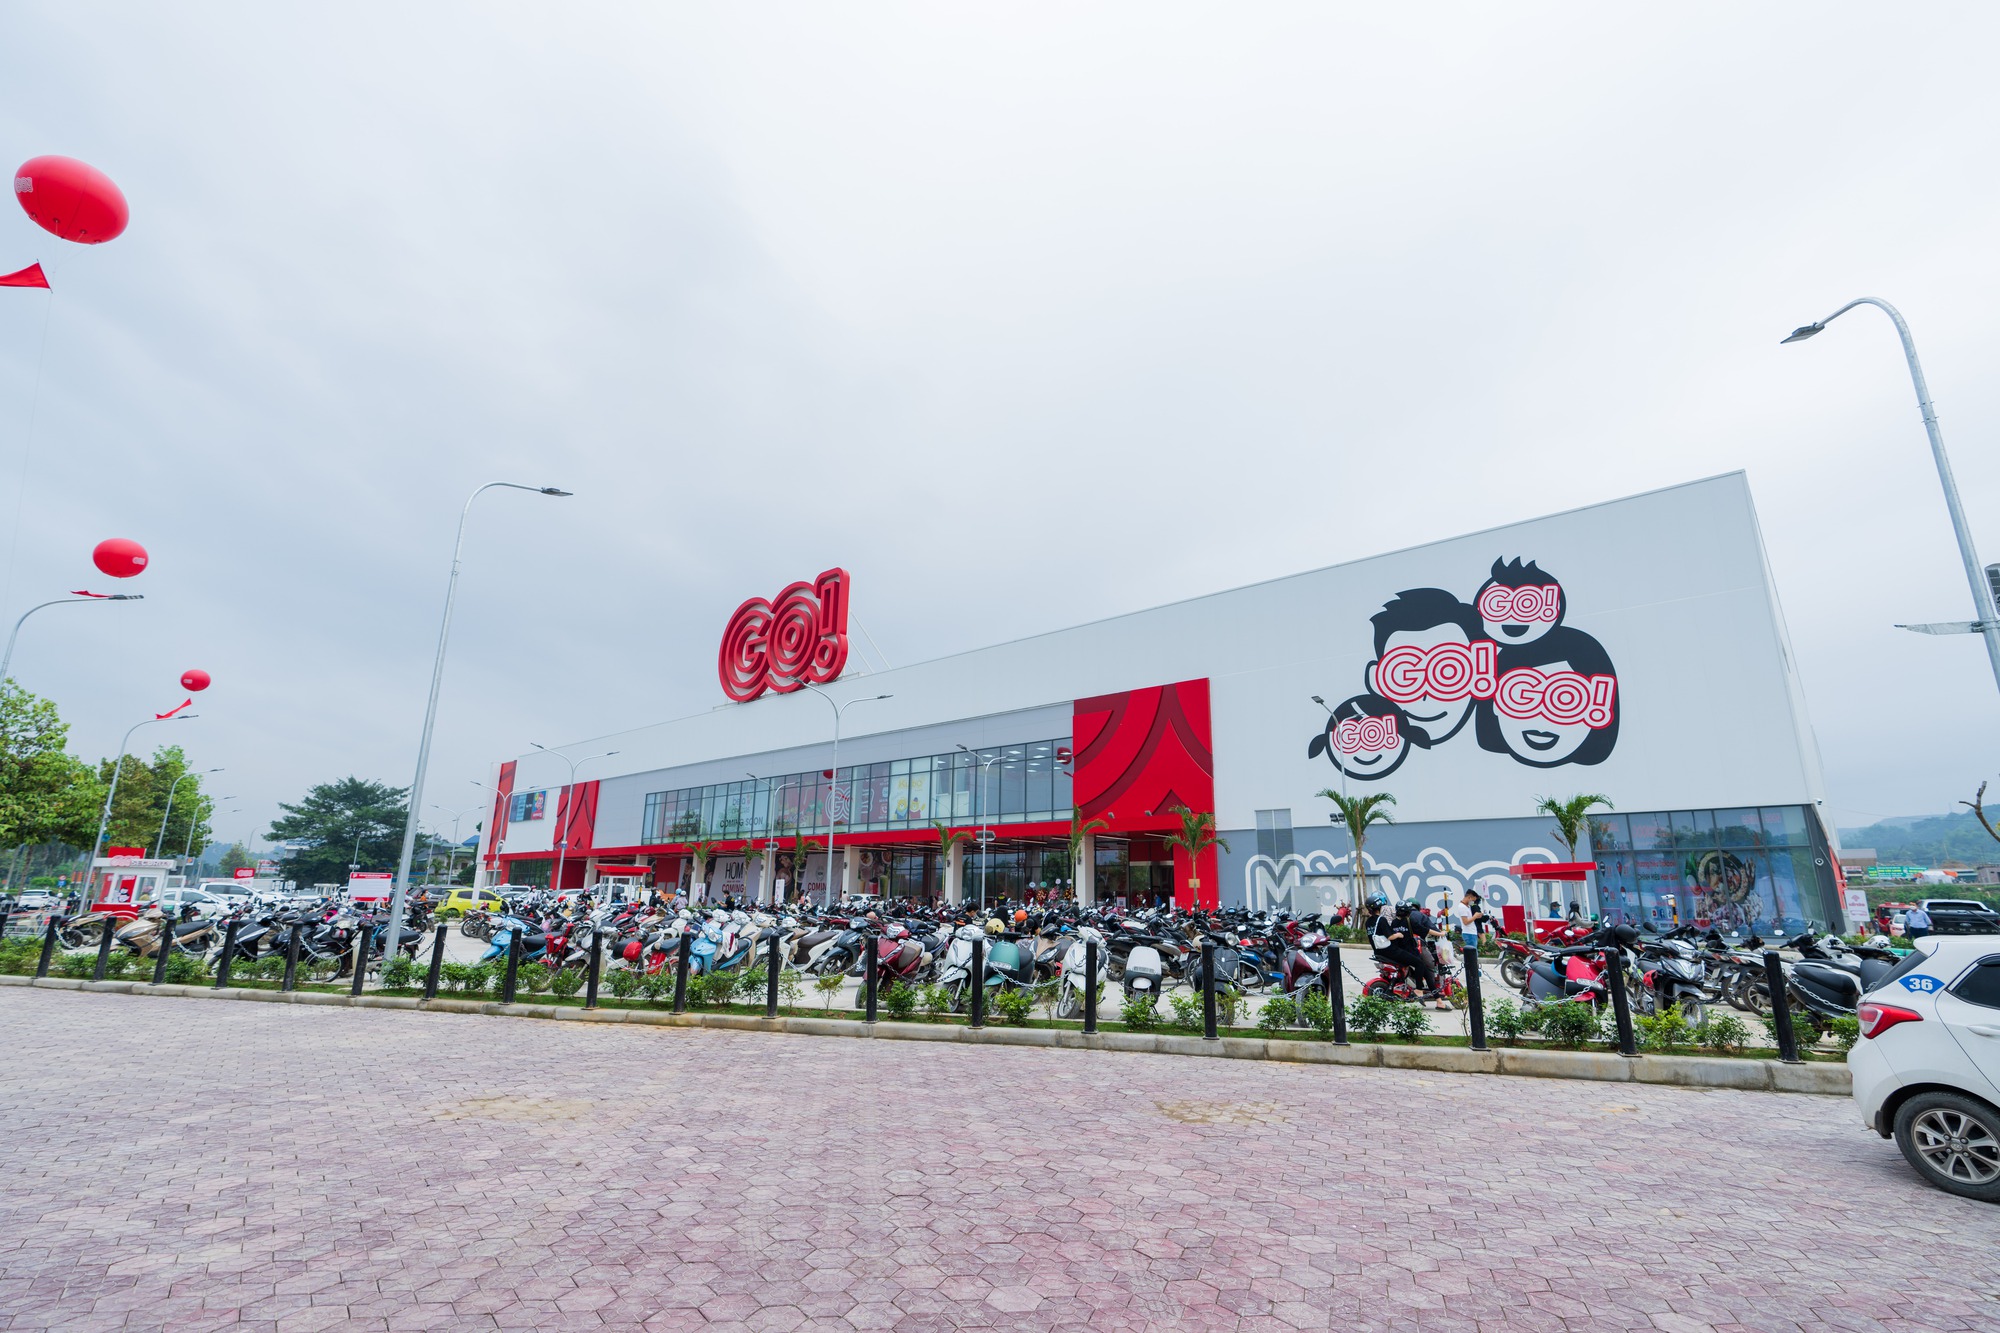 Cận cảnh đại siêu thị đầu tiên ở Lào Cai: Tổng diện tích 30.000m2, 300 tỷ đồng vốn đầu tư, 1/3 gian hàng đến từ doanh nghiệp địa phương - Ảnh 1.